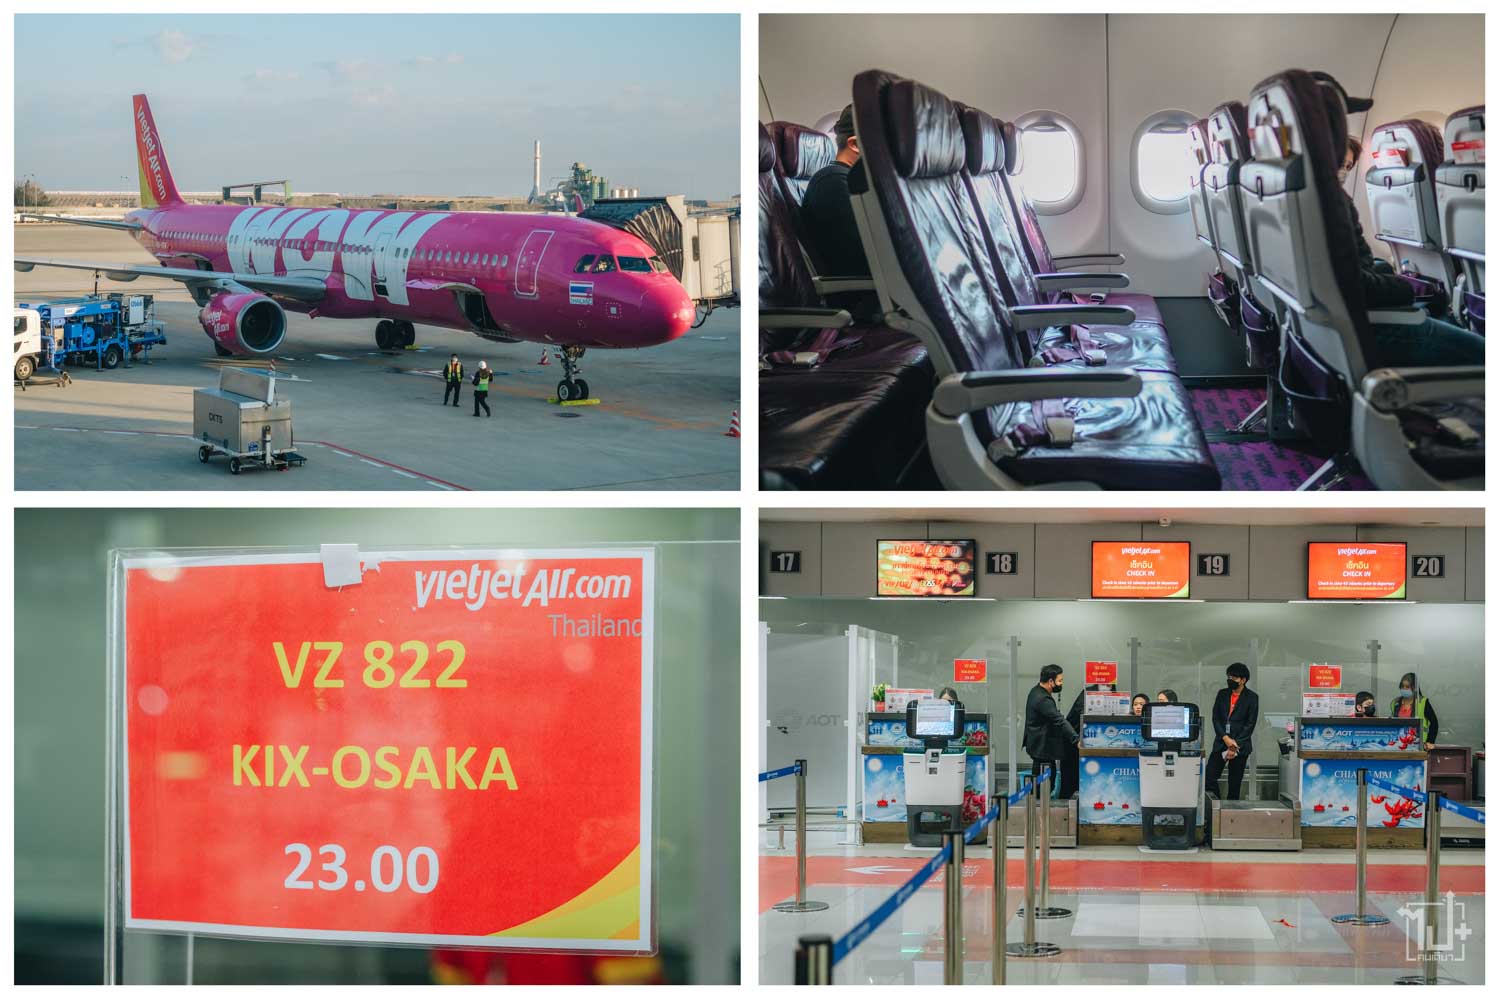 ขับรถเที่ยวญี่ปุ่น,เที่ยวญี่ปุ่นด้วยตัวเอง,ที่เที่ยวเกียวโต,ที่เที่ยวโอซาก้า,ที่เที่ยวคันไซ,รีวิวญี่ปุ่น2023,VietjetAir ,ThaiVietjetAir,Kyoto,Osaka,Kansai,Japan,VisitJapan